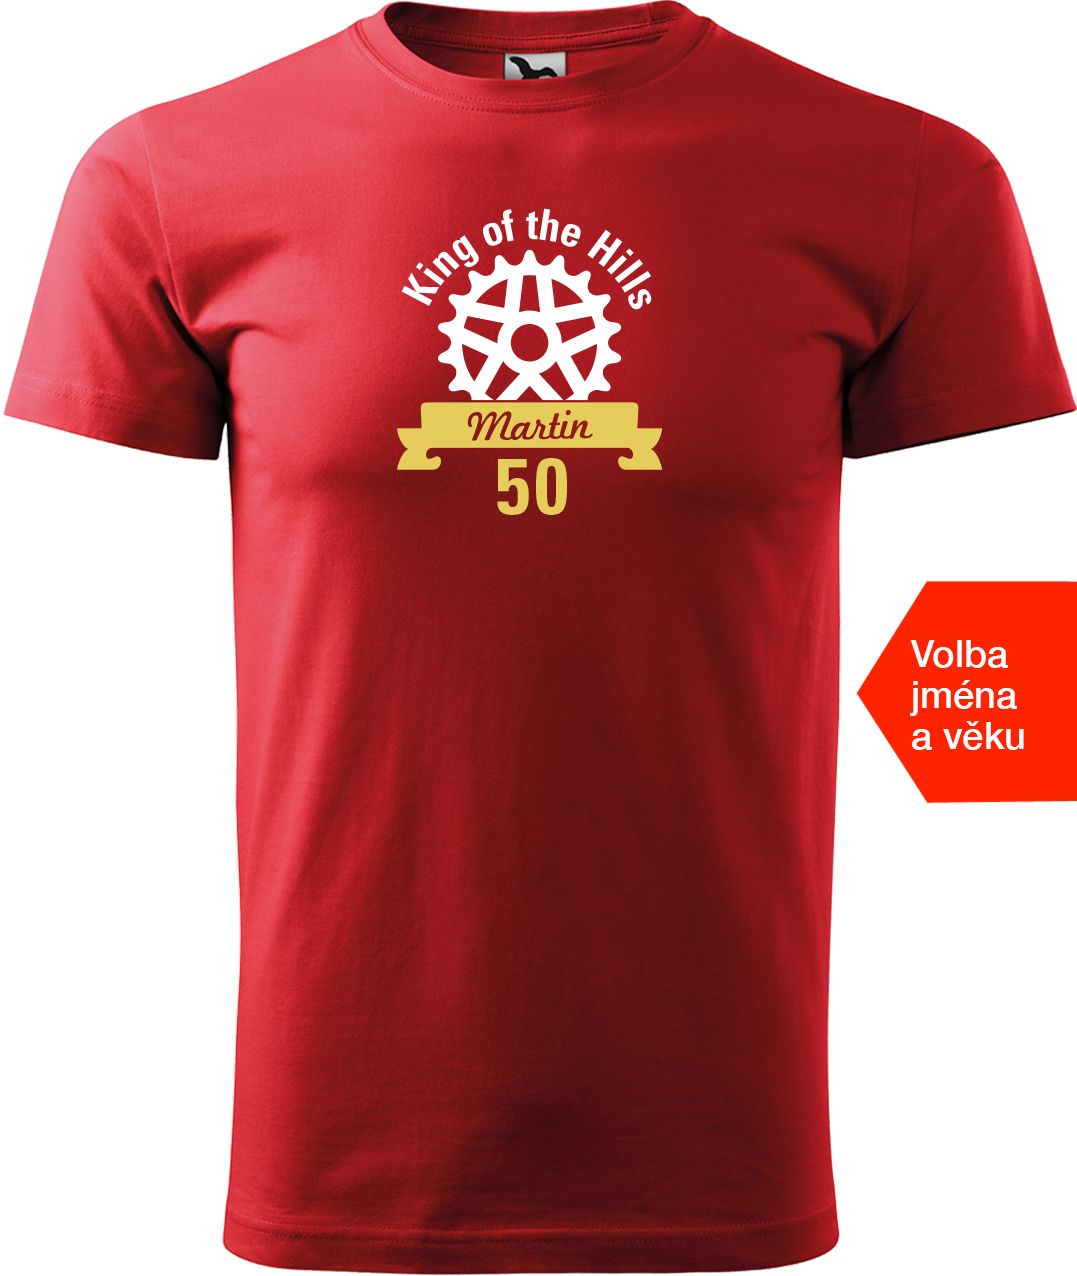 Pánské tričko pro cyklistu se jménem - King of the Hills Velikost: L, Barva: Červená (07)